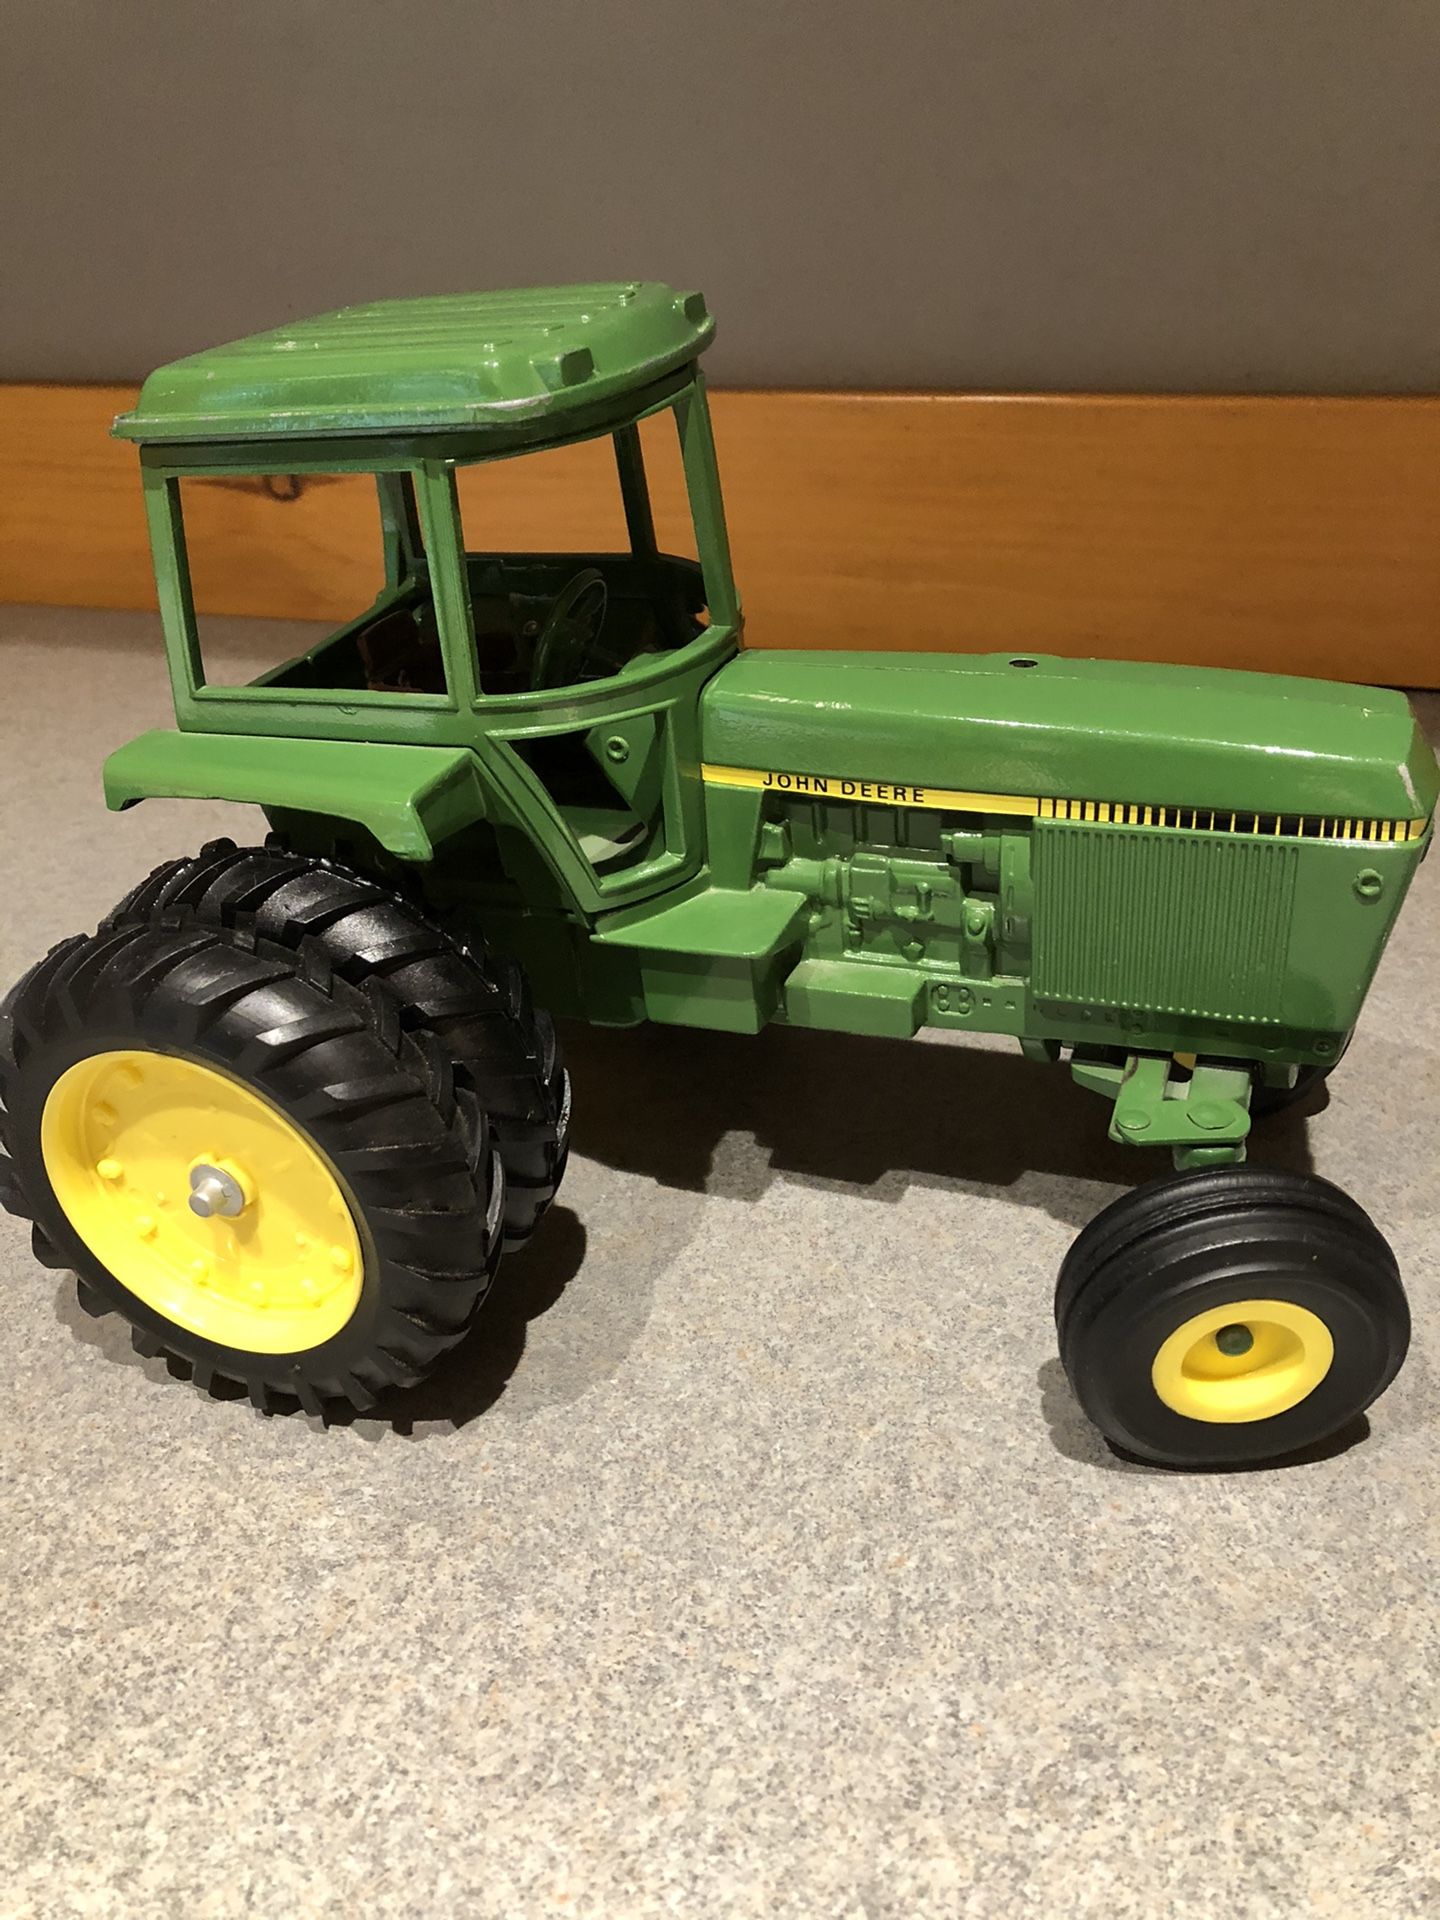 ERTL John Deere tractor 512-7216